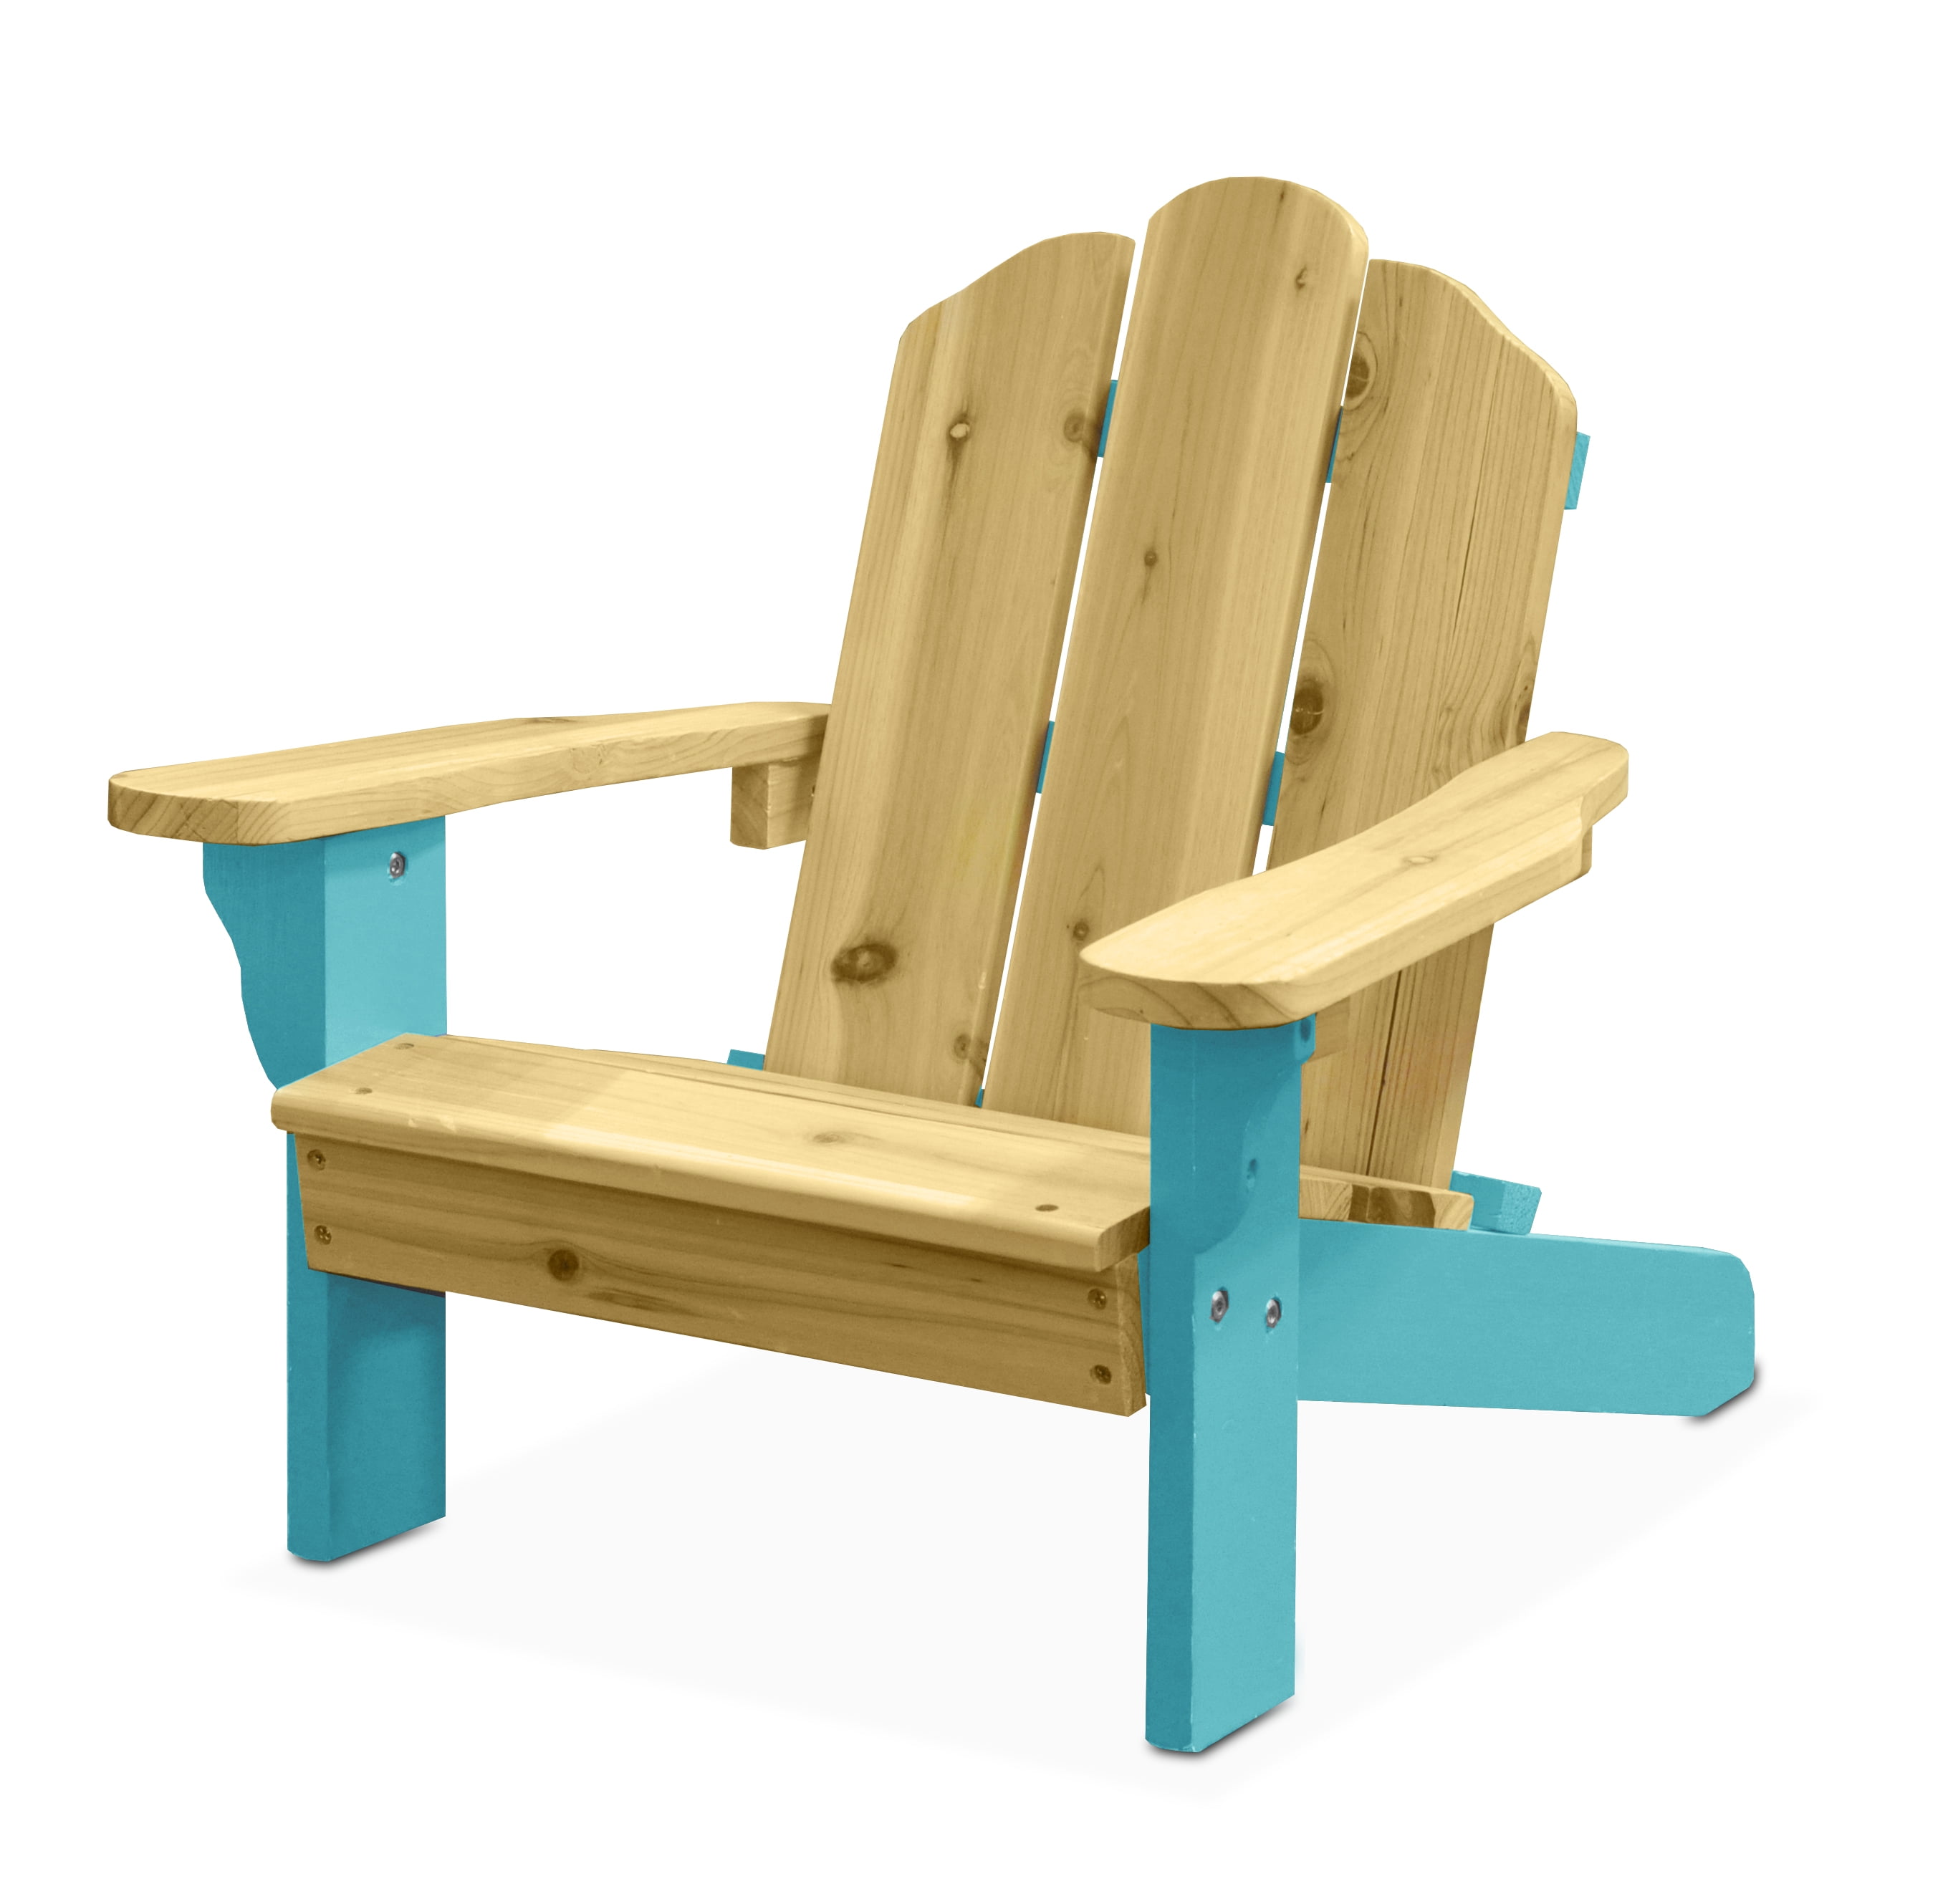 children's adirondack chair walmart